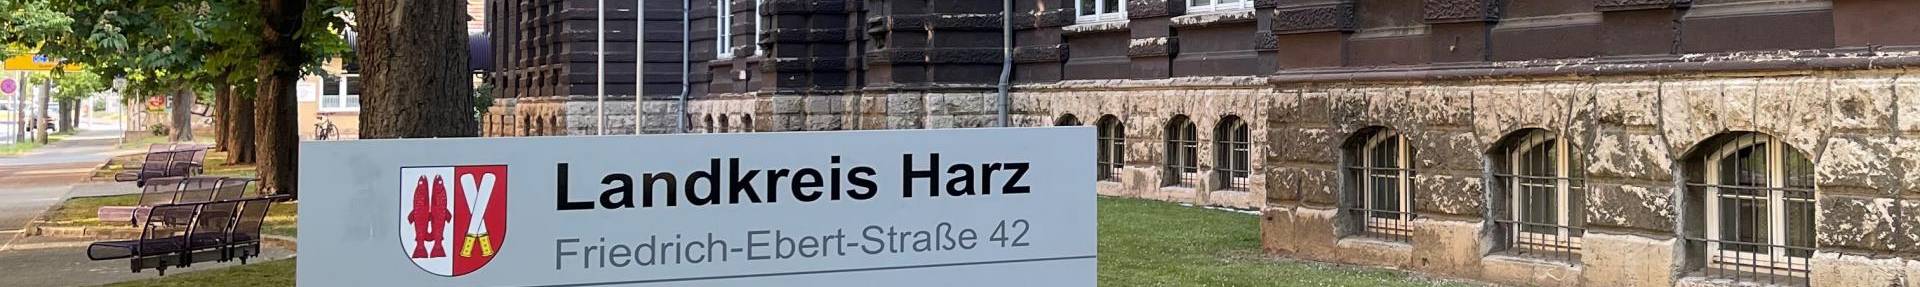 Außenansicht Verwaltungsgebäude Landkreis Harz, im Vordergrund ein Schild mit Öffnungszeiten.